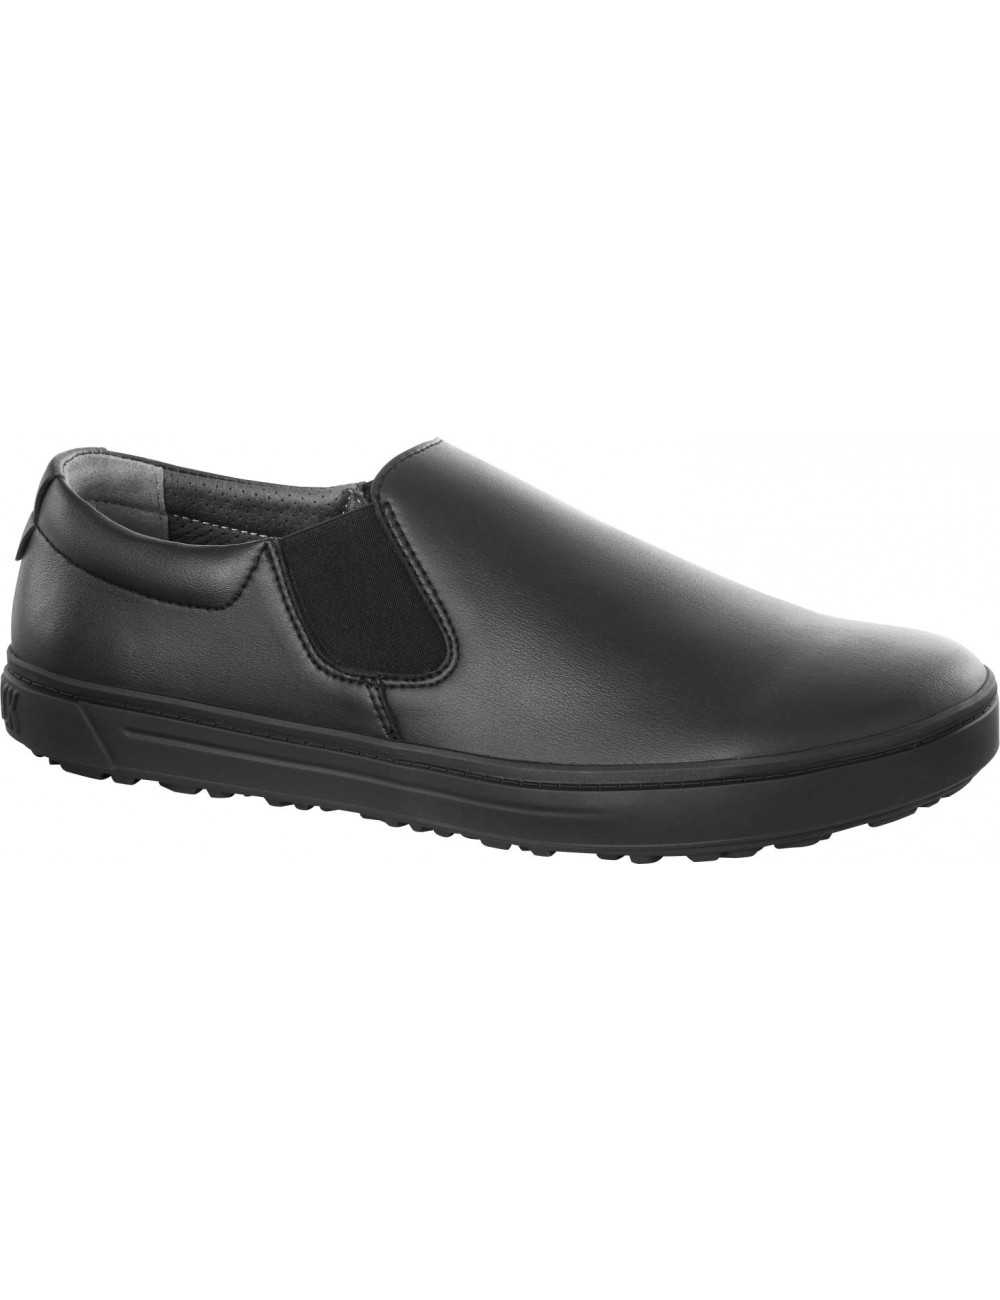 Birkenstock QO500 Microfibra  Zapato de Seguridad con puntera de acero